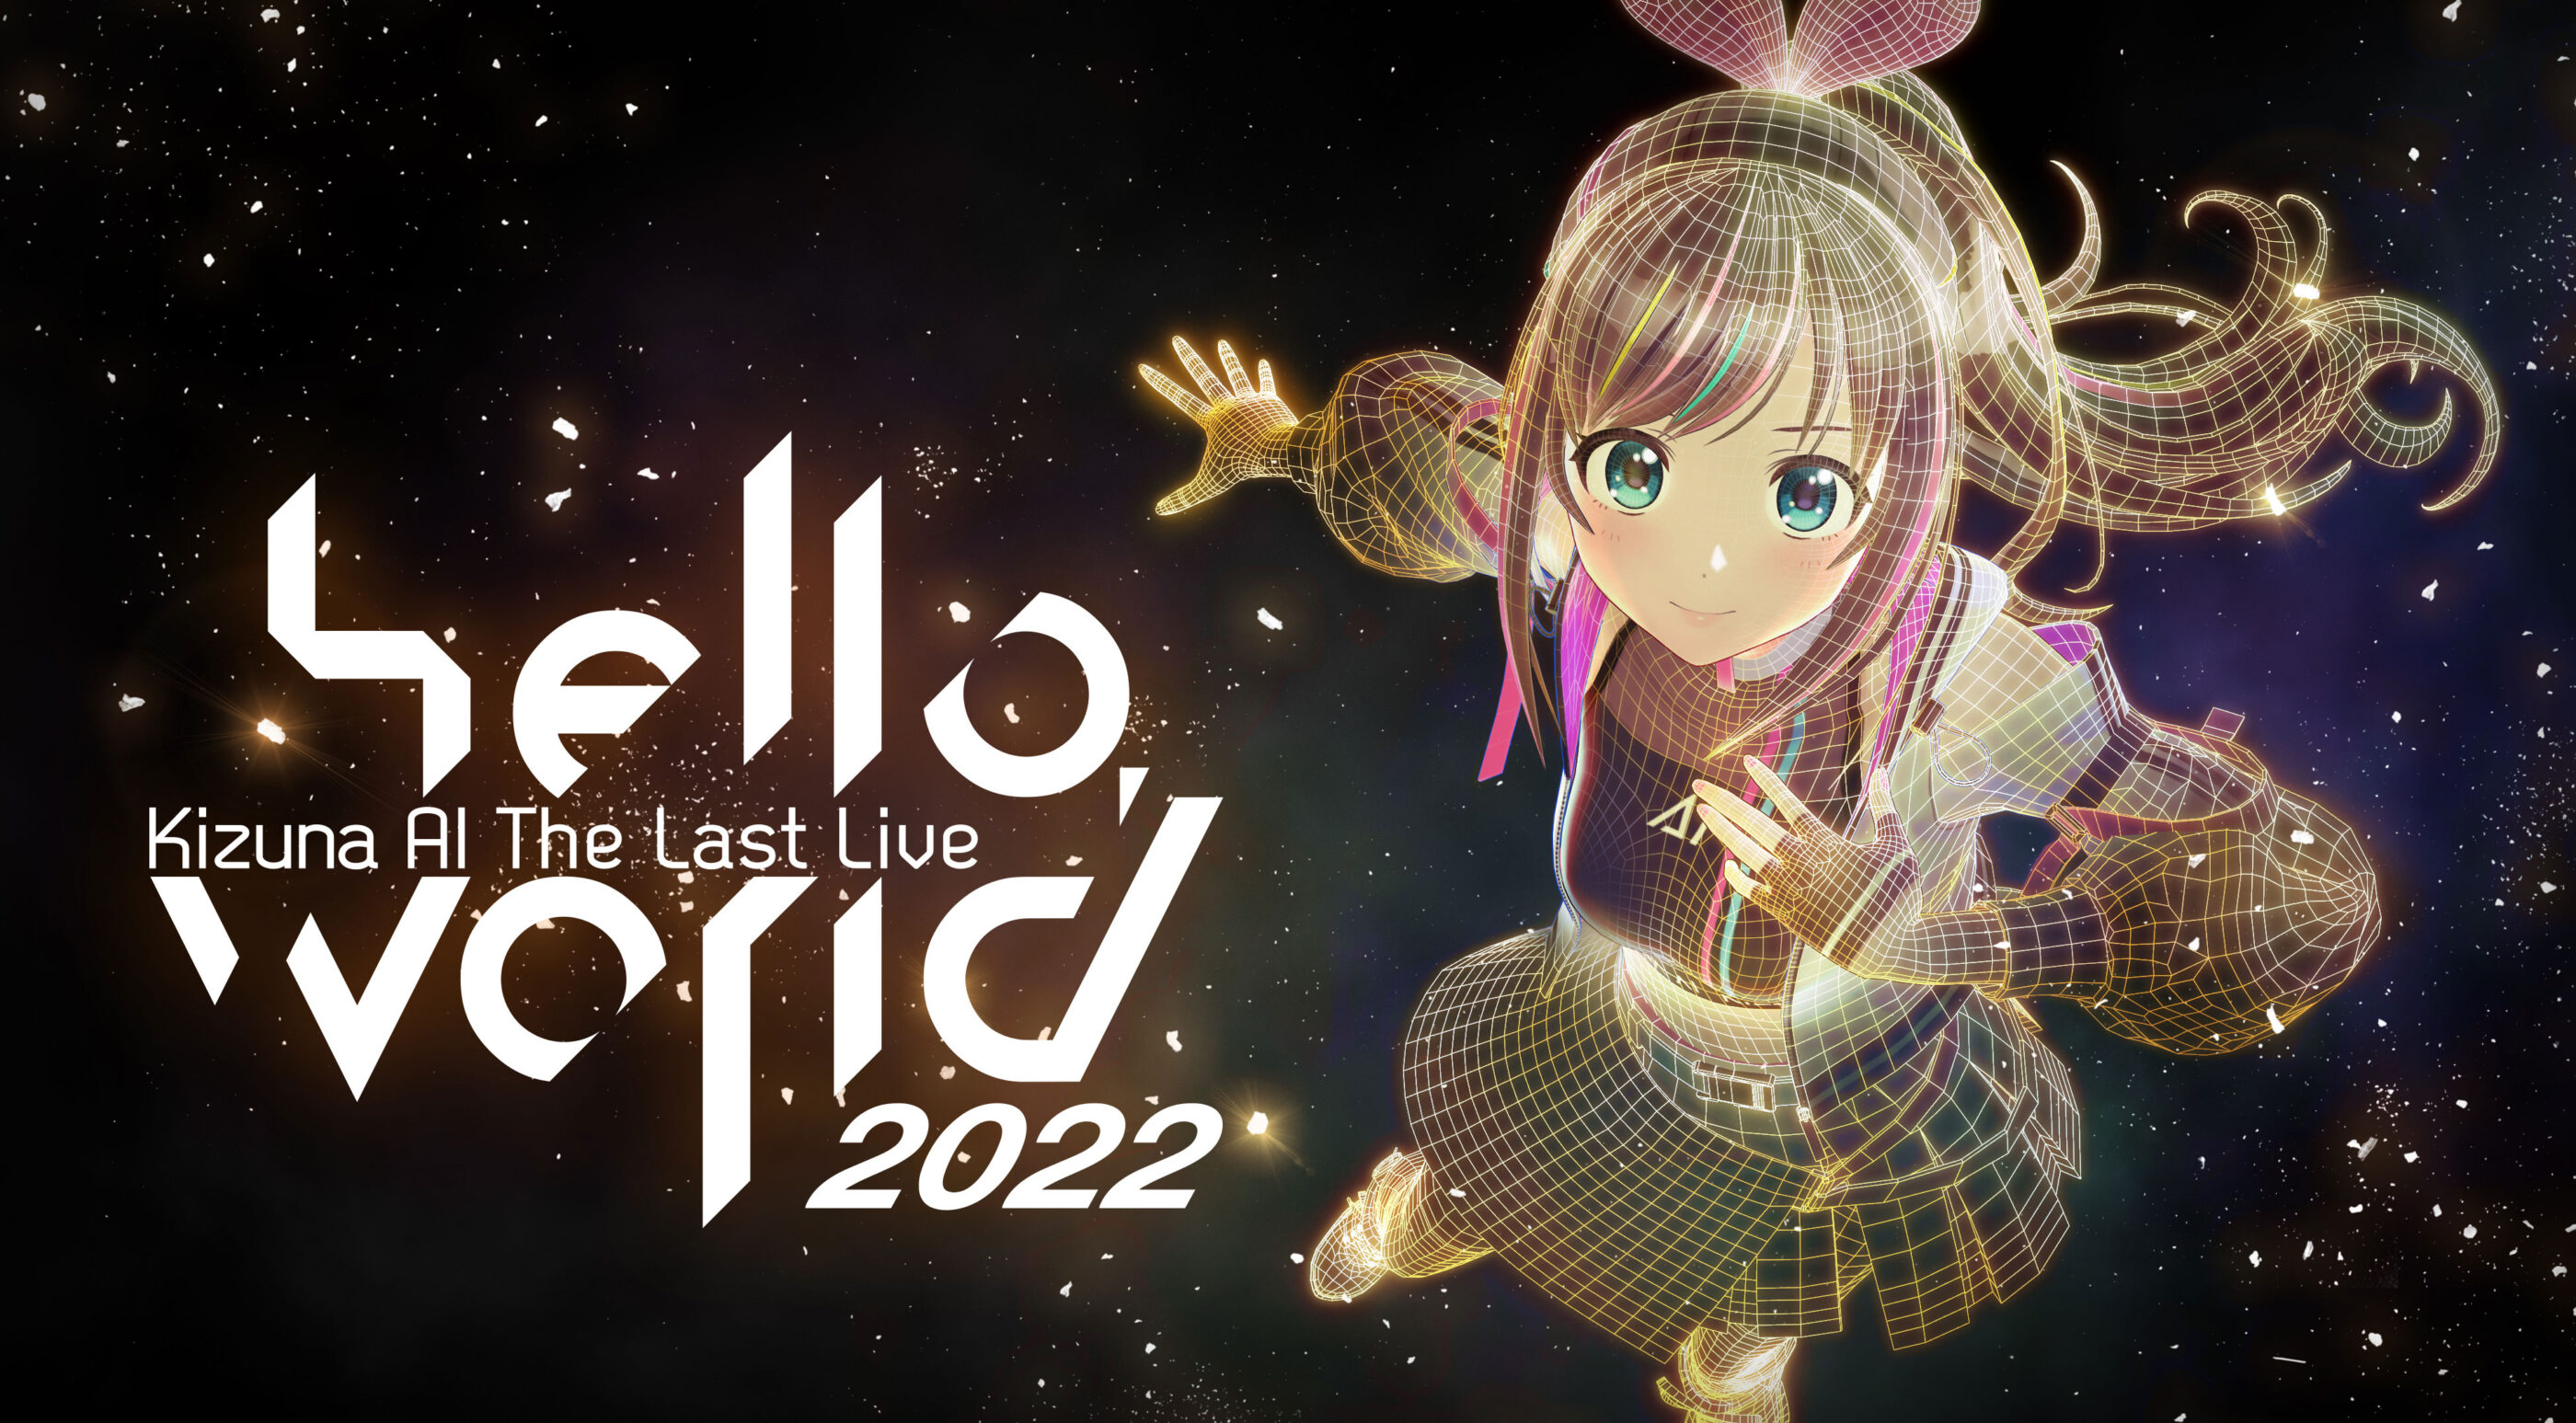 キズナアイ ラストライブ直前インタビュー 「Kizuna AI The Last Live “hello, world 2022”」 に込めた想い